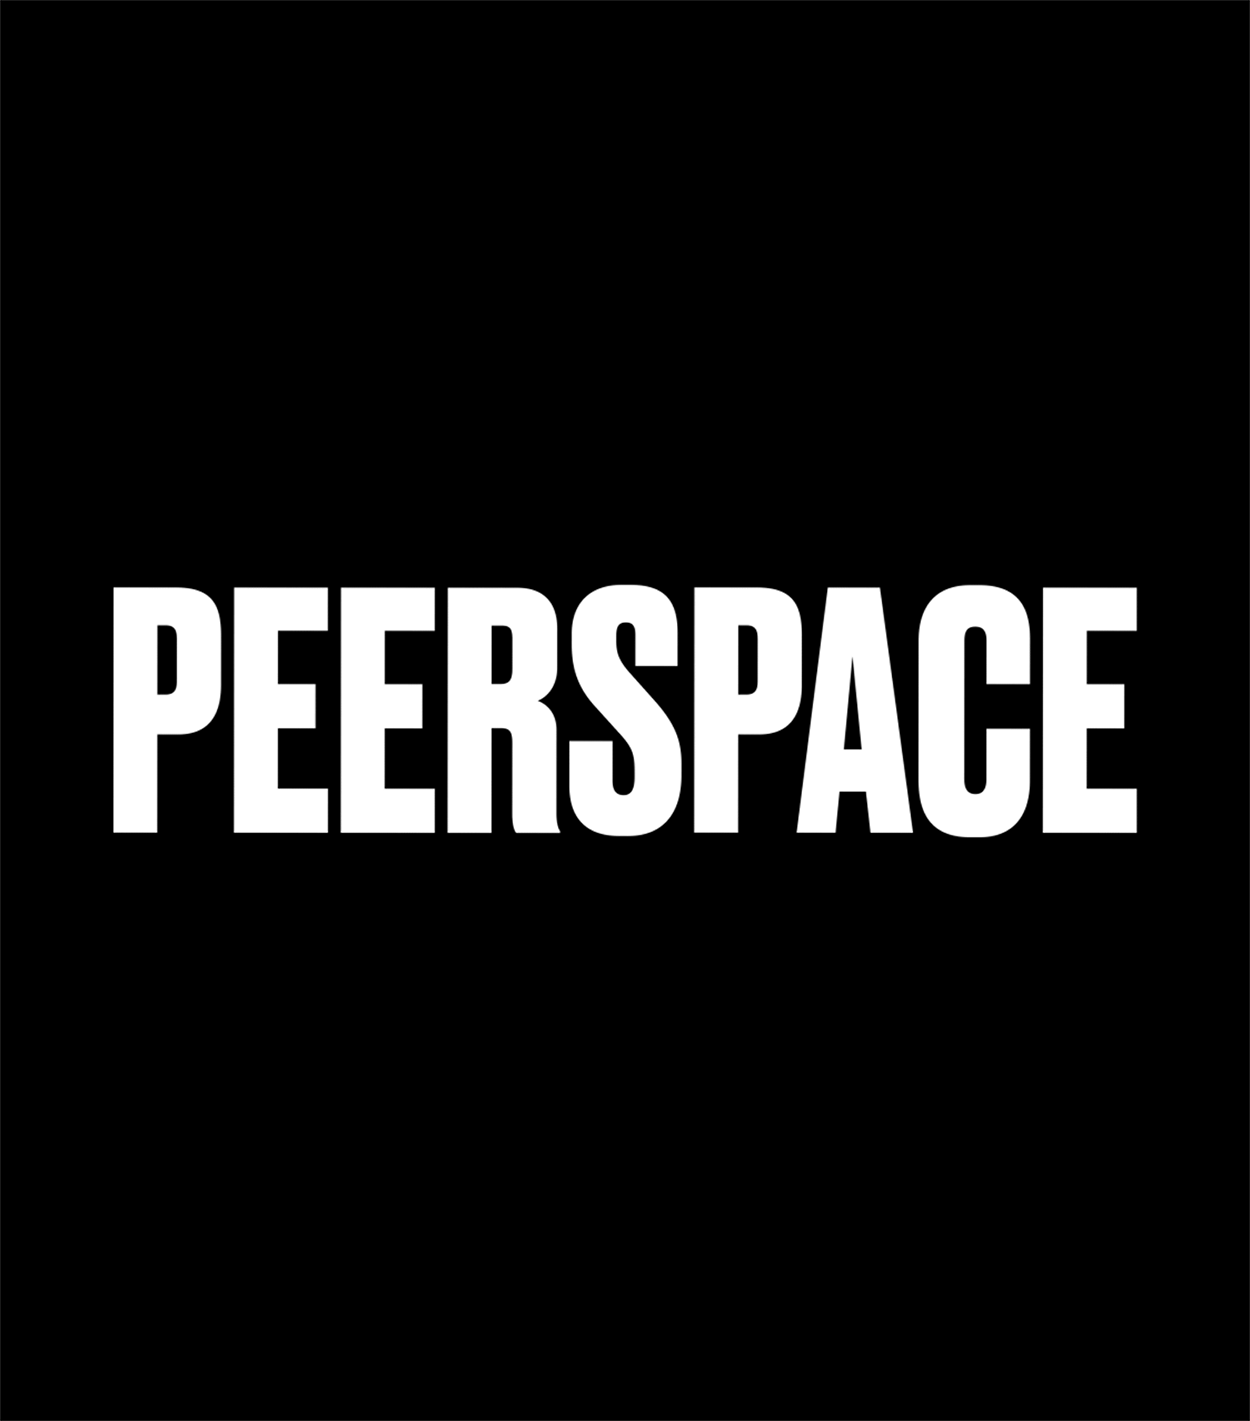 Peerspace, Matthijs van Leeuwen, Matt van Leeuwen, Mother Design, Ben Clark, Morgan Smith